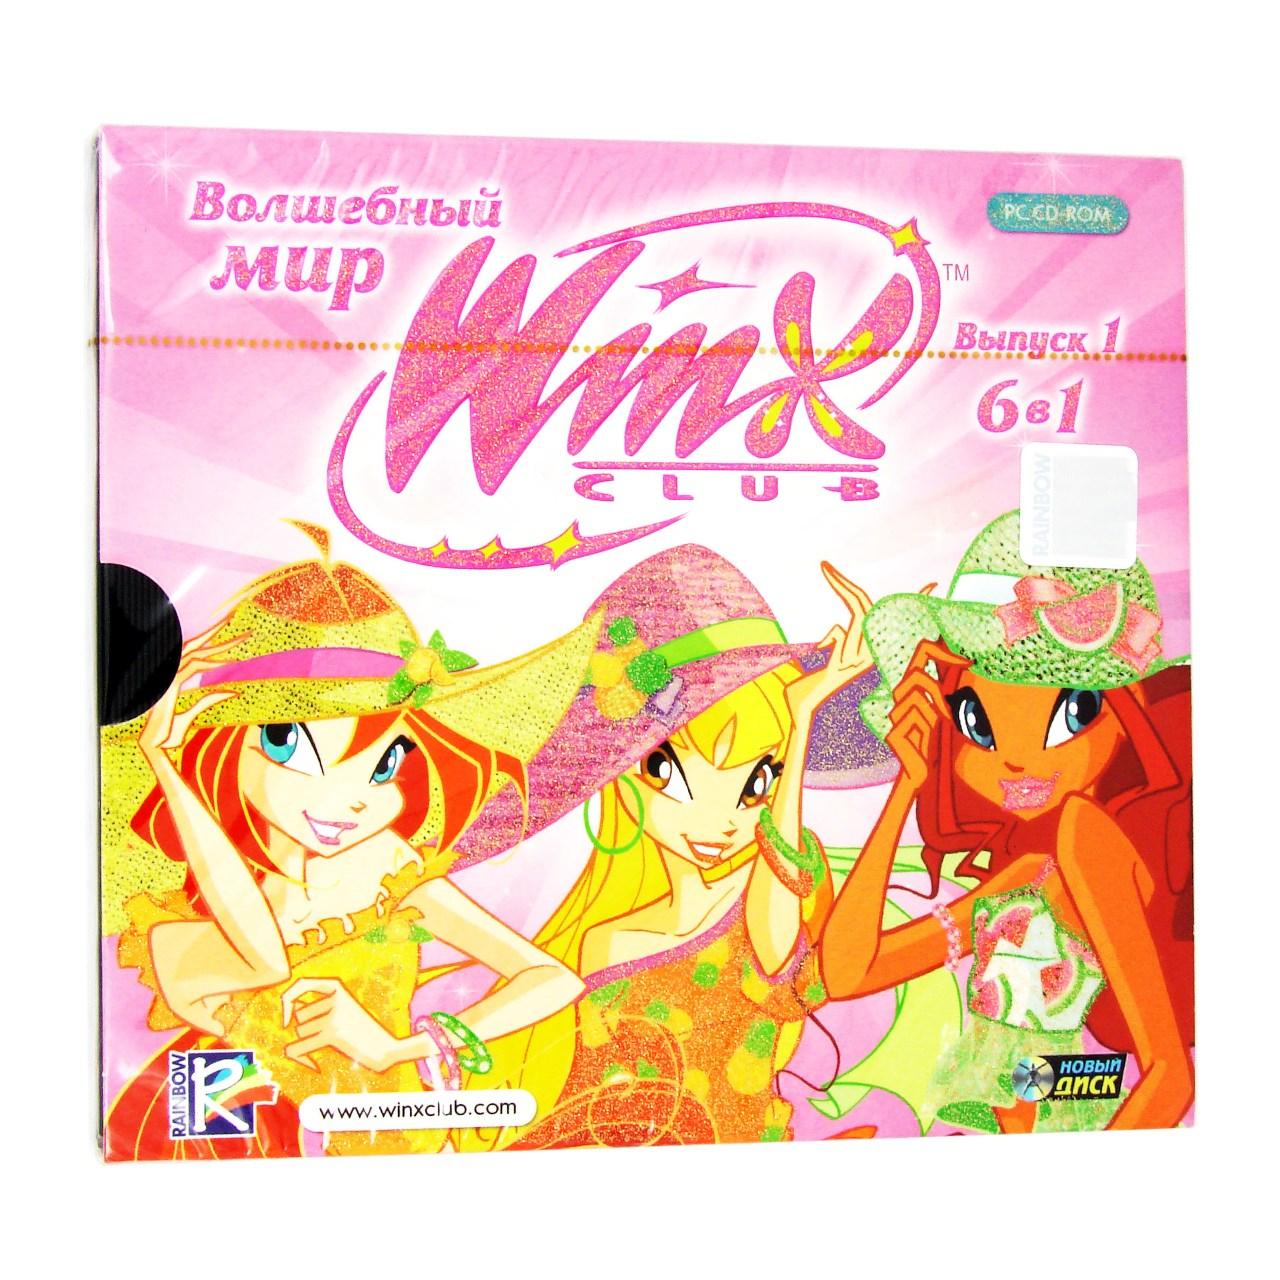 Компьютерный компакт-диск Winx. Волшебный мир. Выпуск 1. 6 в 1 (ПК), фирма "Новый диск", 1CD